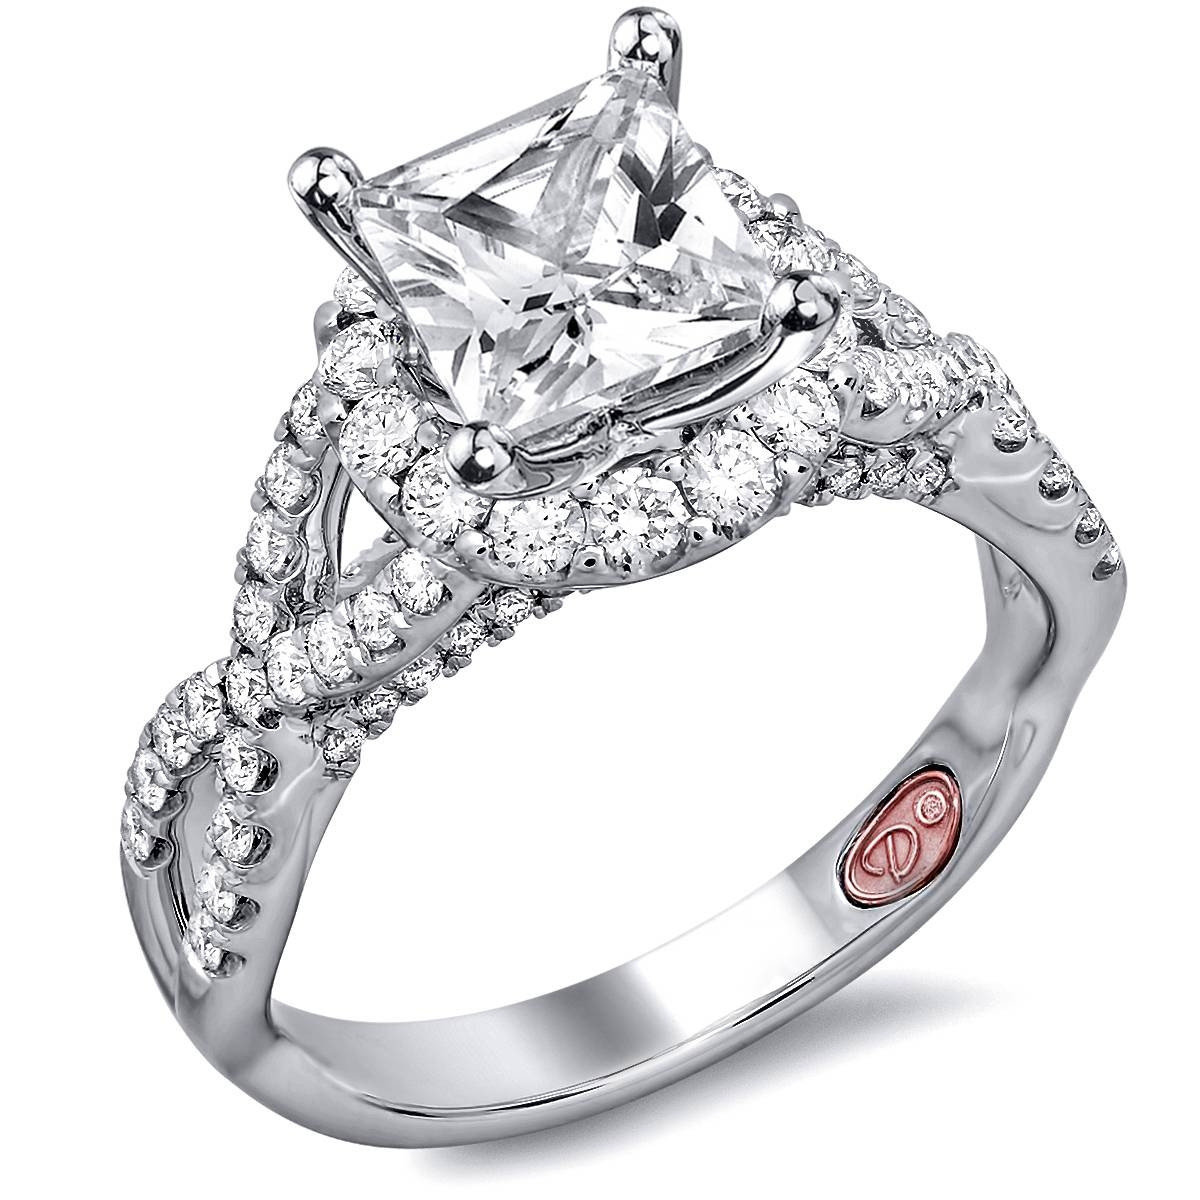 Engagement Princess Cut Rings
 15 Best of Unique Princess Cut Diamond Engagement Rings